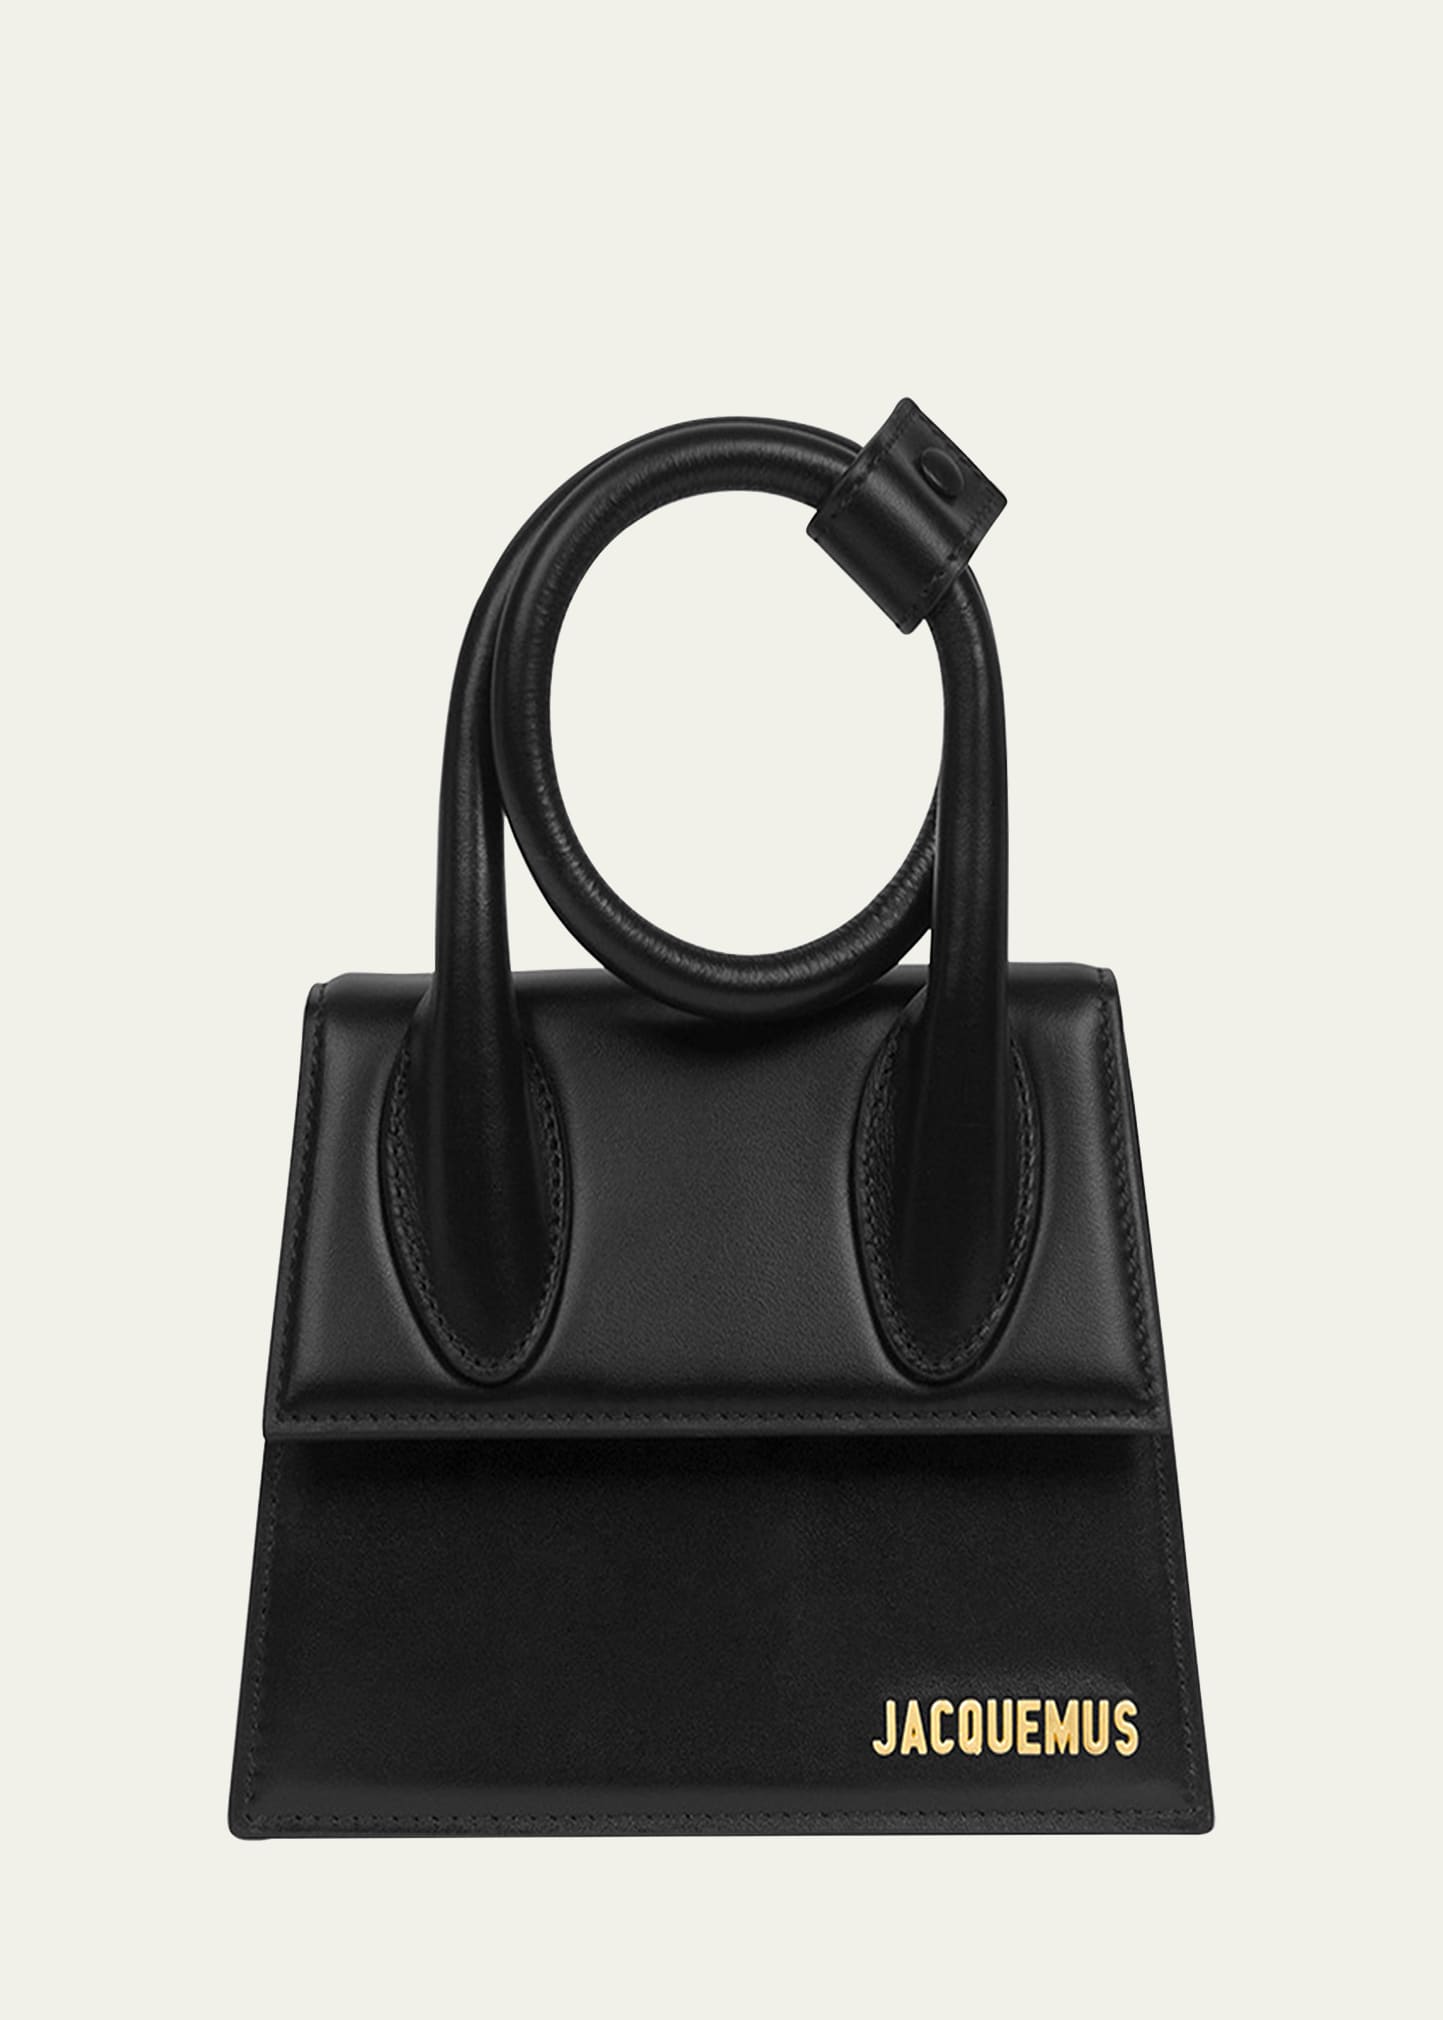 Jacquemus Le Chiquito Noeud Satchel Bag, Black, Women's, Handbags & Purses Satchels